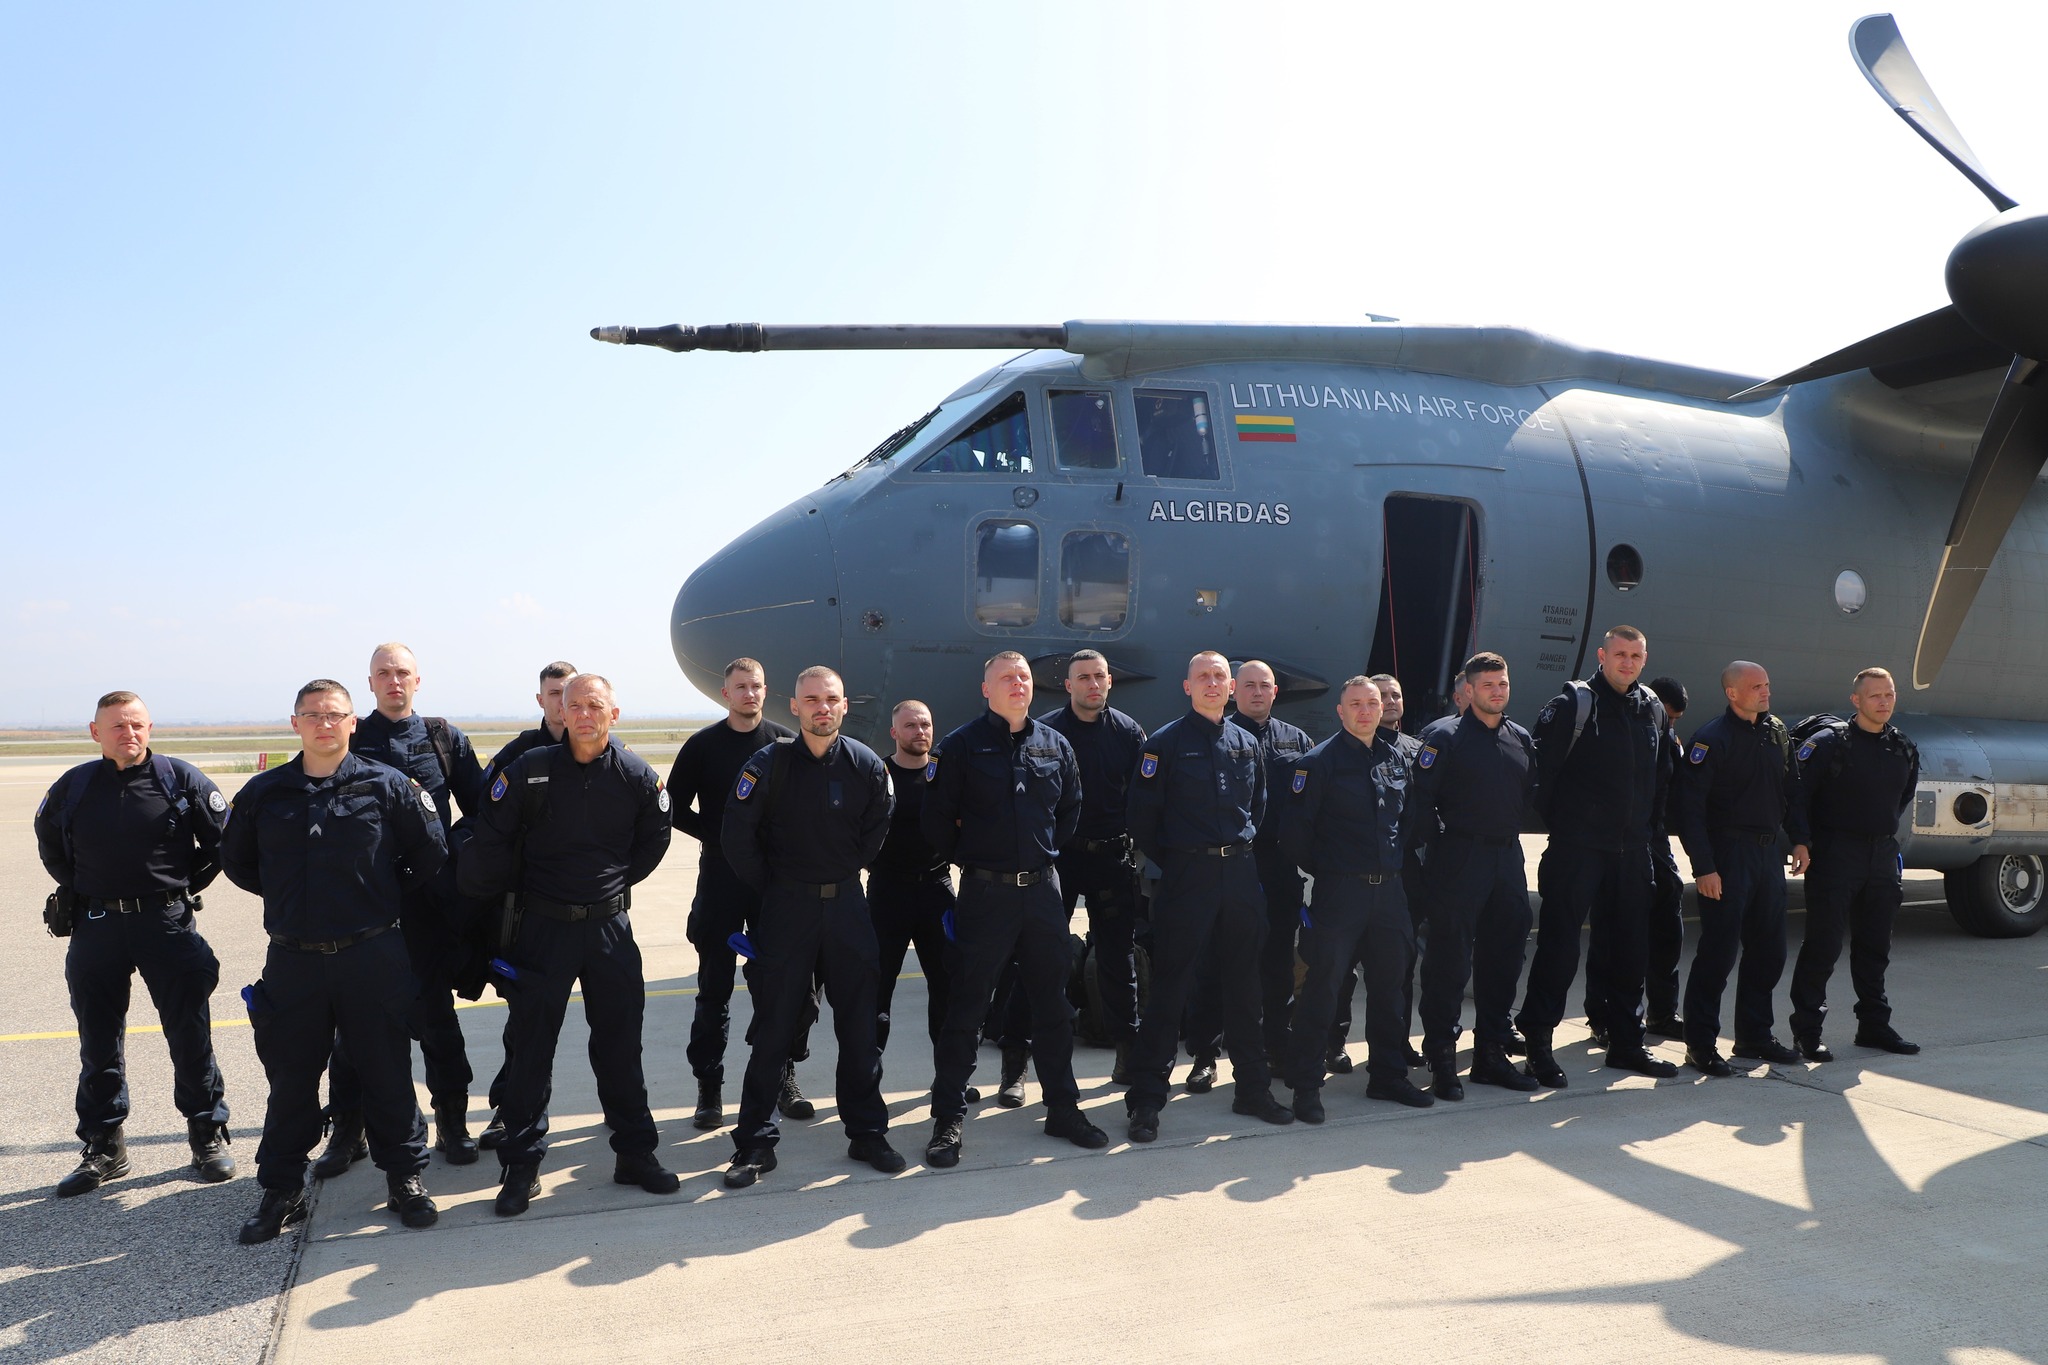 EULEX ojačava svoju Rezervnu specijalozovanu policijsku jedinicu sa 20 litvanskih žandarma